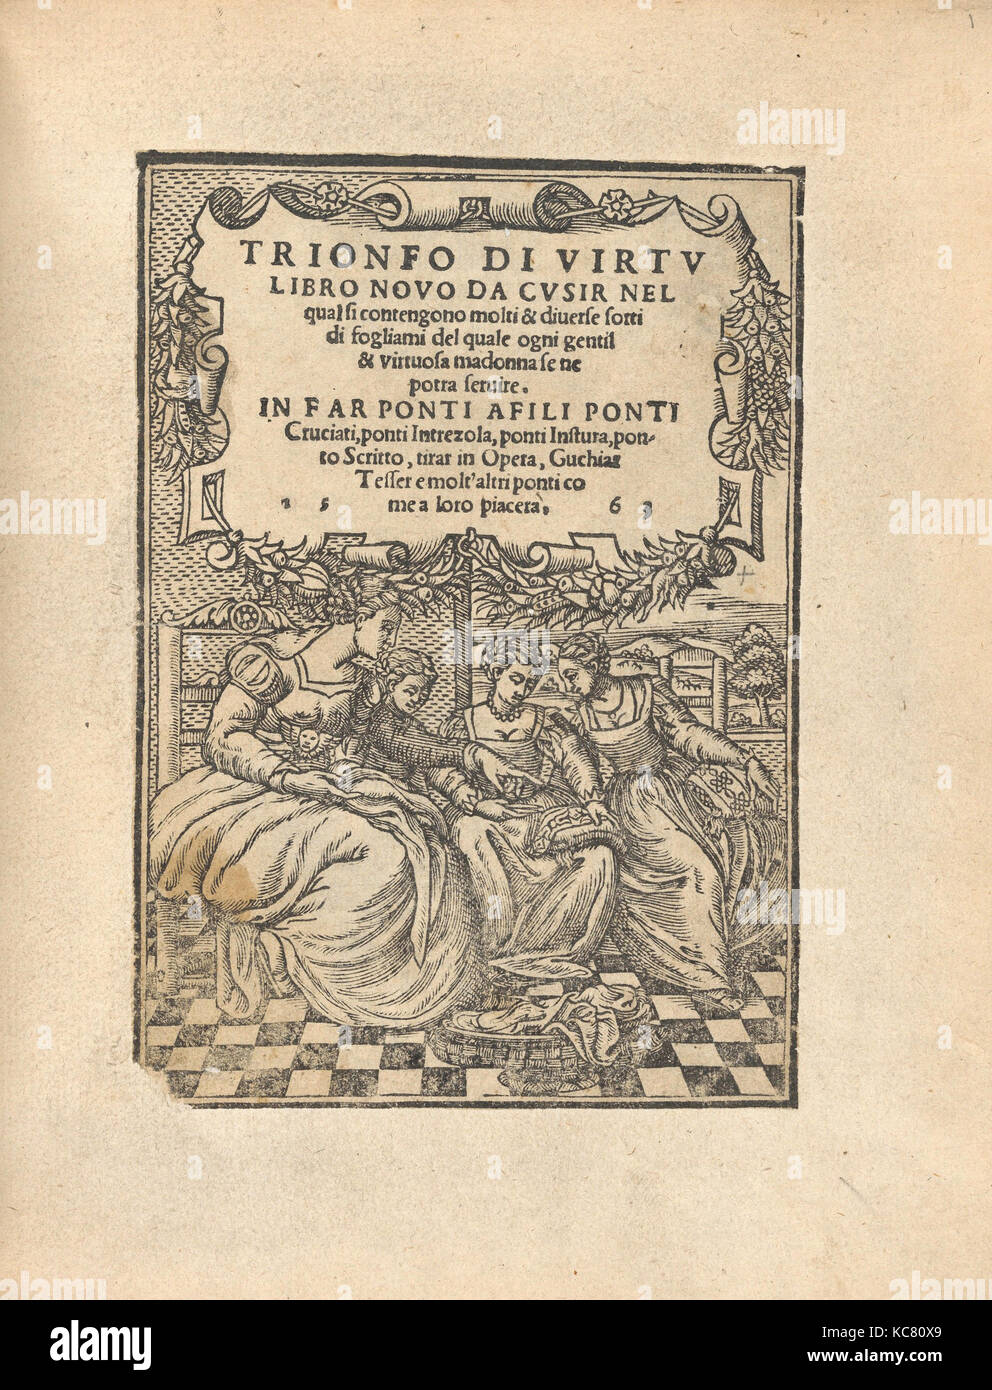 Trionfo di Virtu. Libro Novo..., Titelseite (recto), 1563 Stockfoto